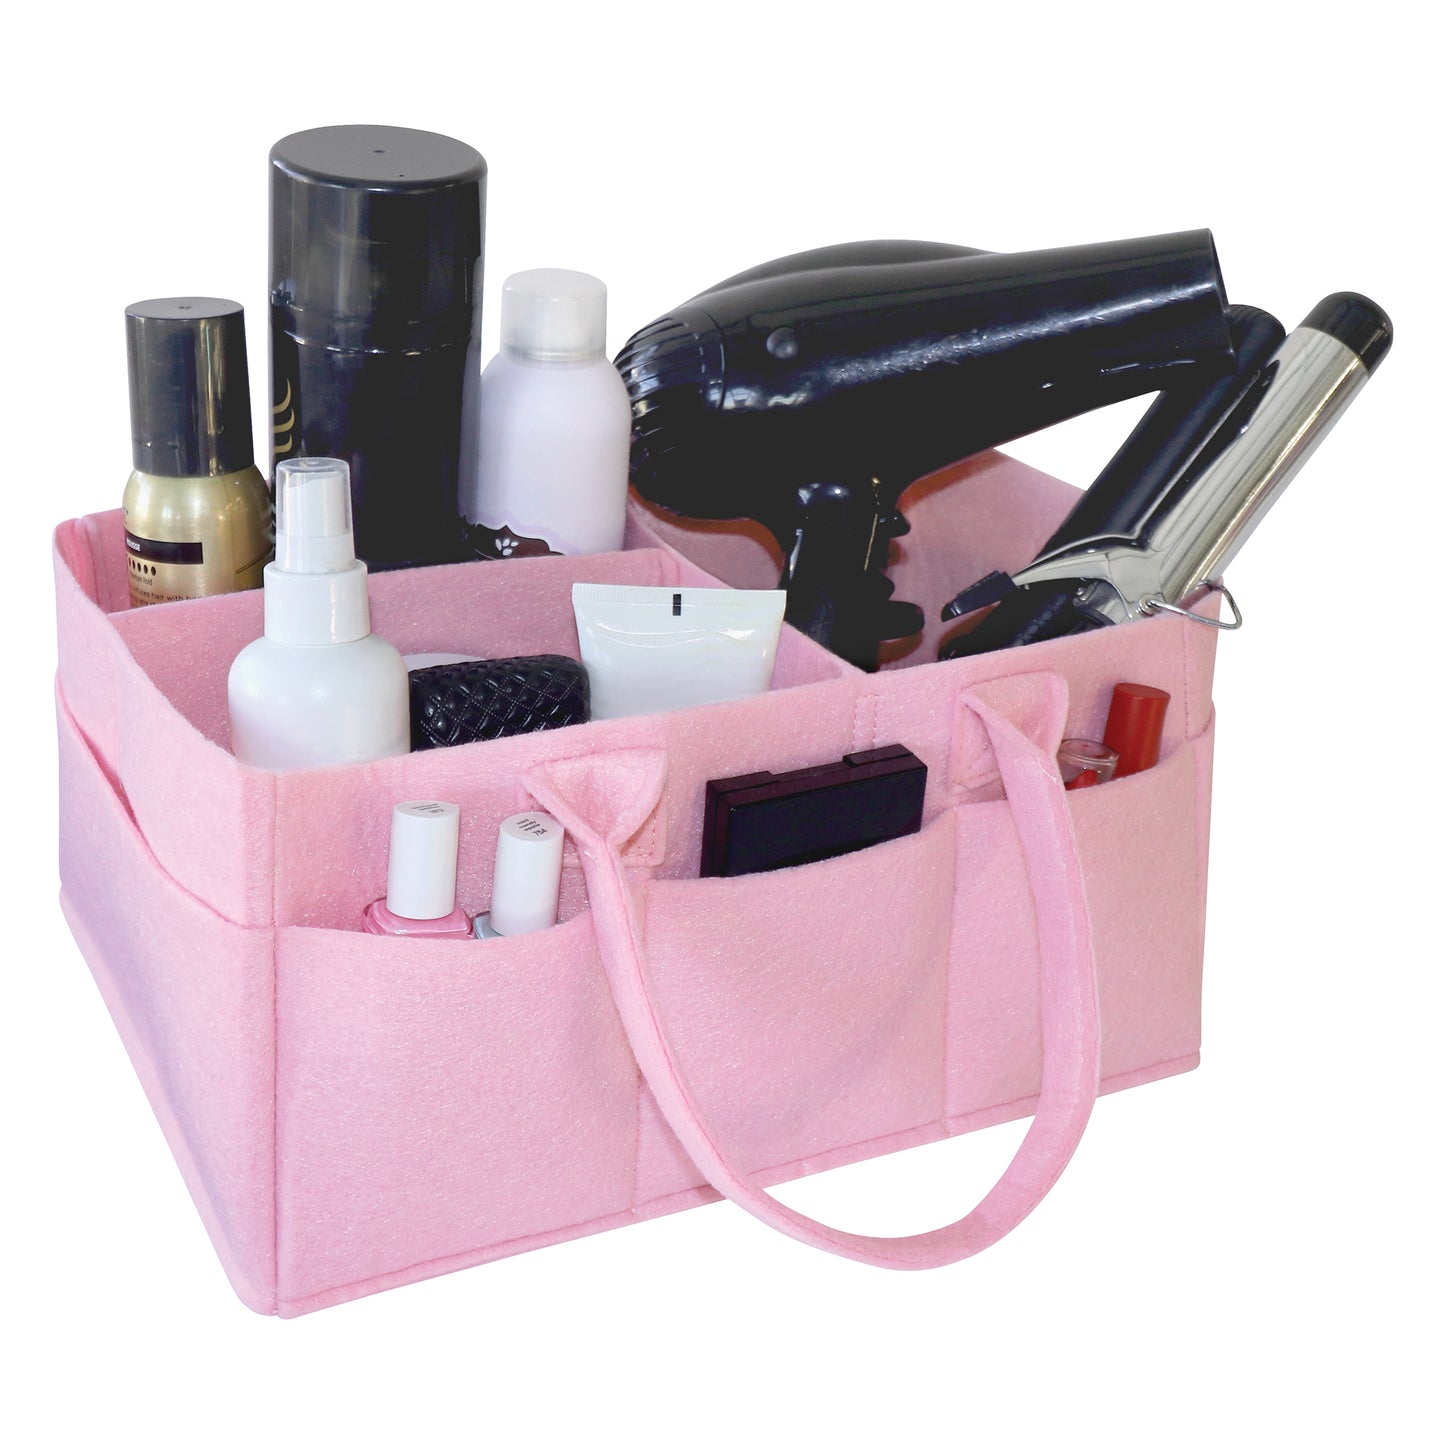 Ice Pink Felt Storage Caddy by Sammy & Lou®